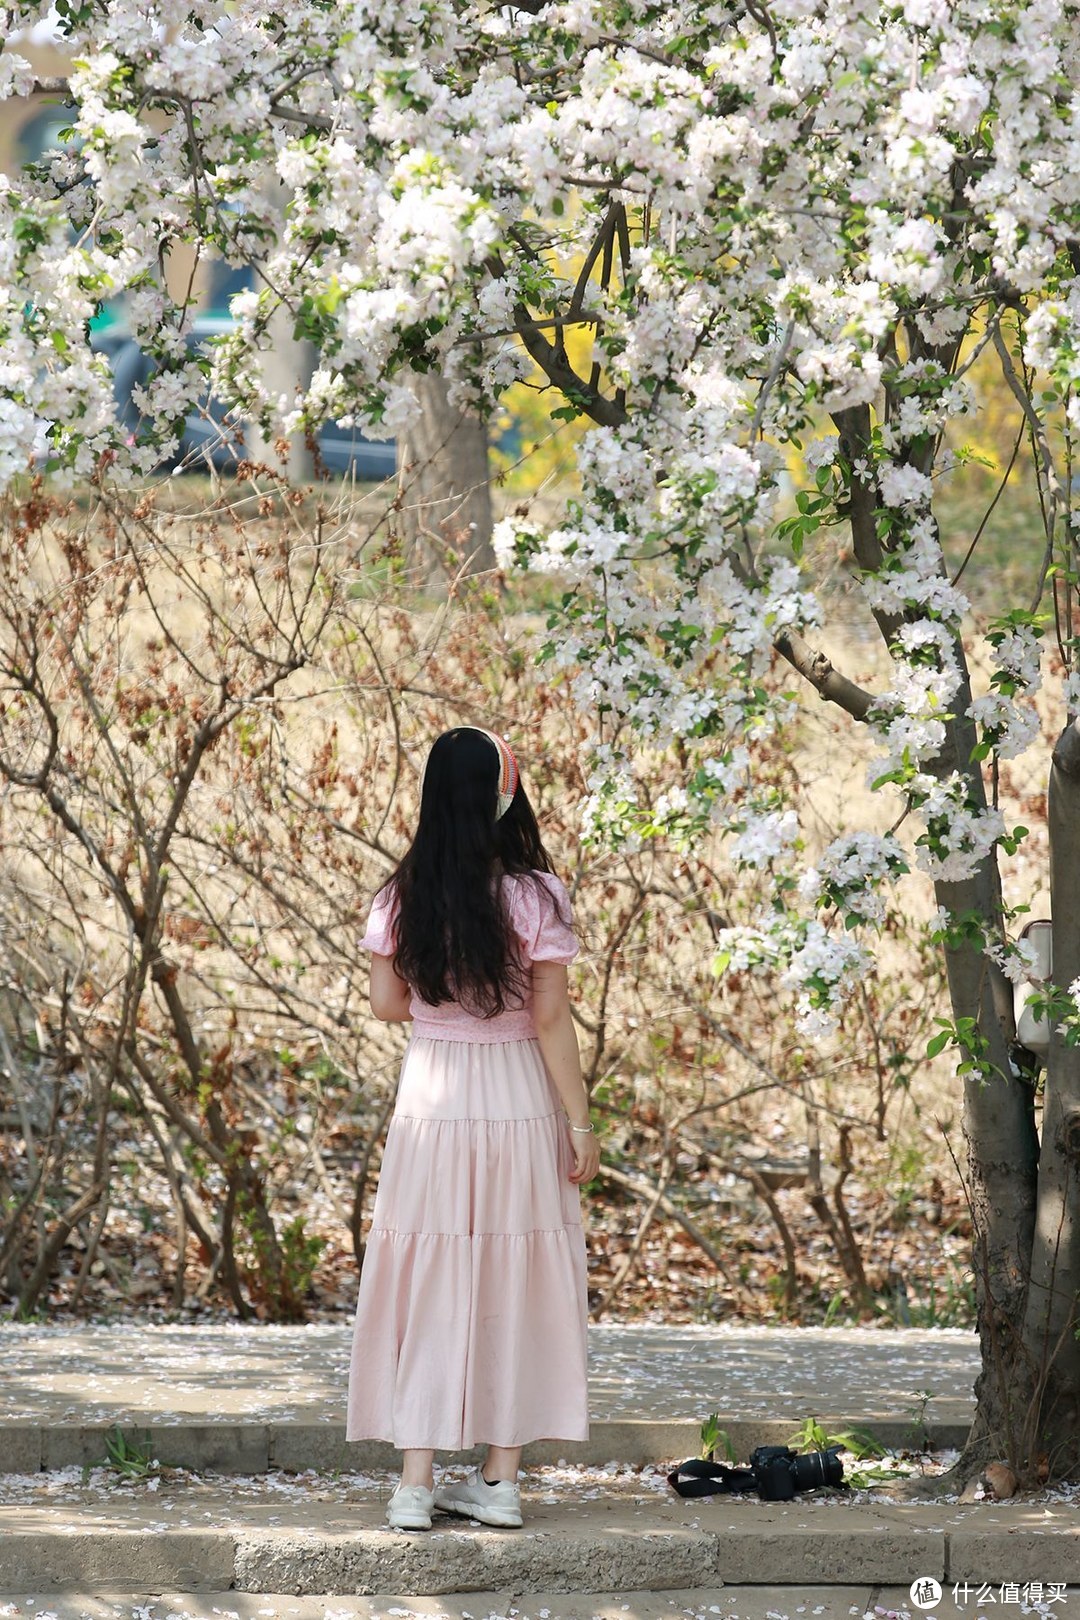 一镜走天下，海棠花溪在望京南地铁处赏花更美丽